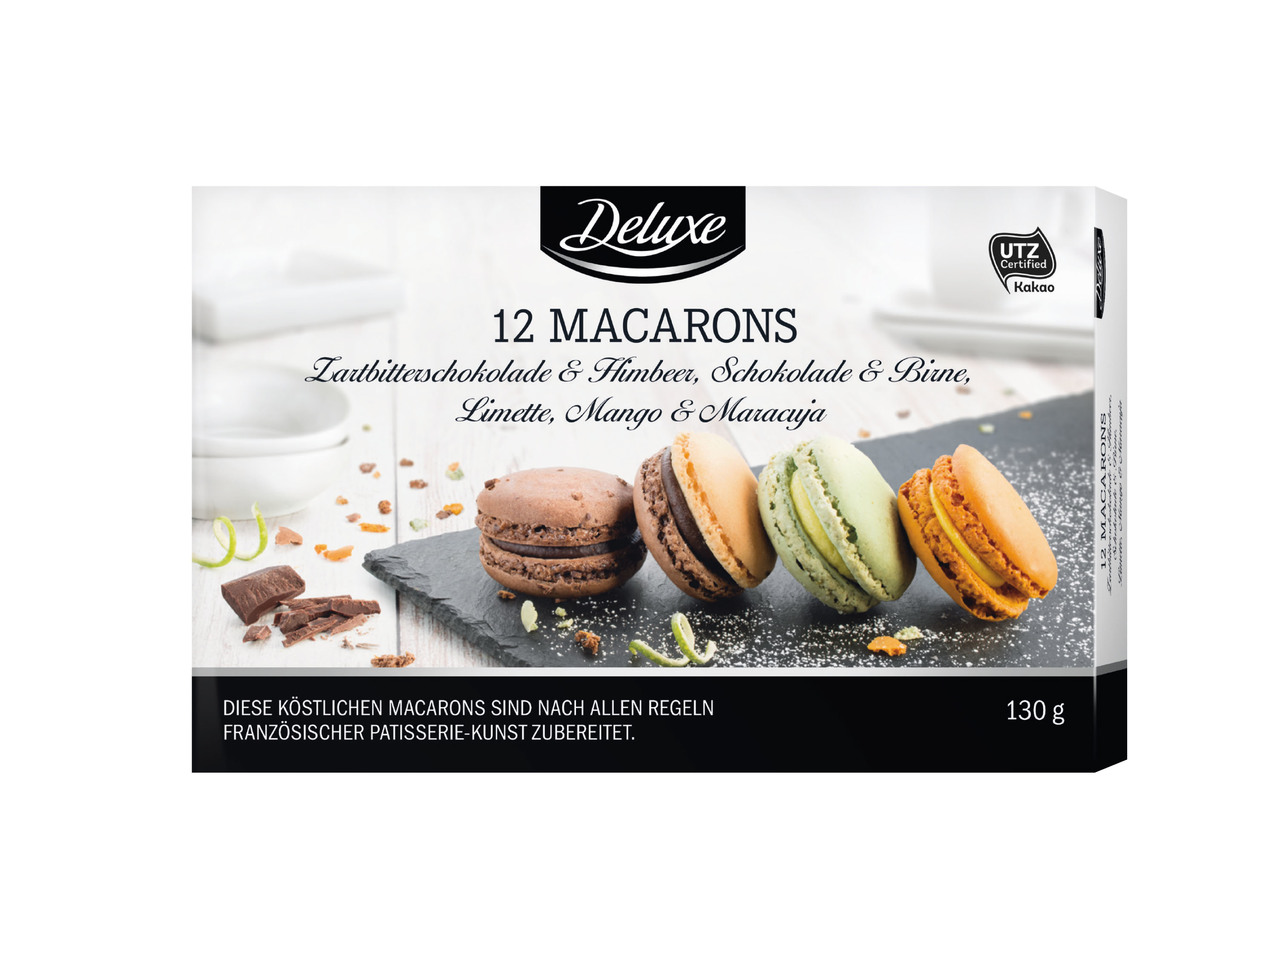 DELUXE(R) Macarons